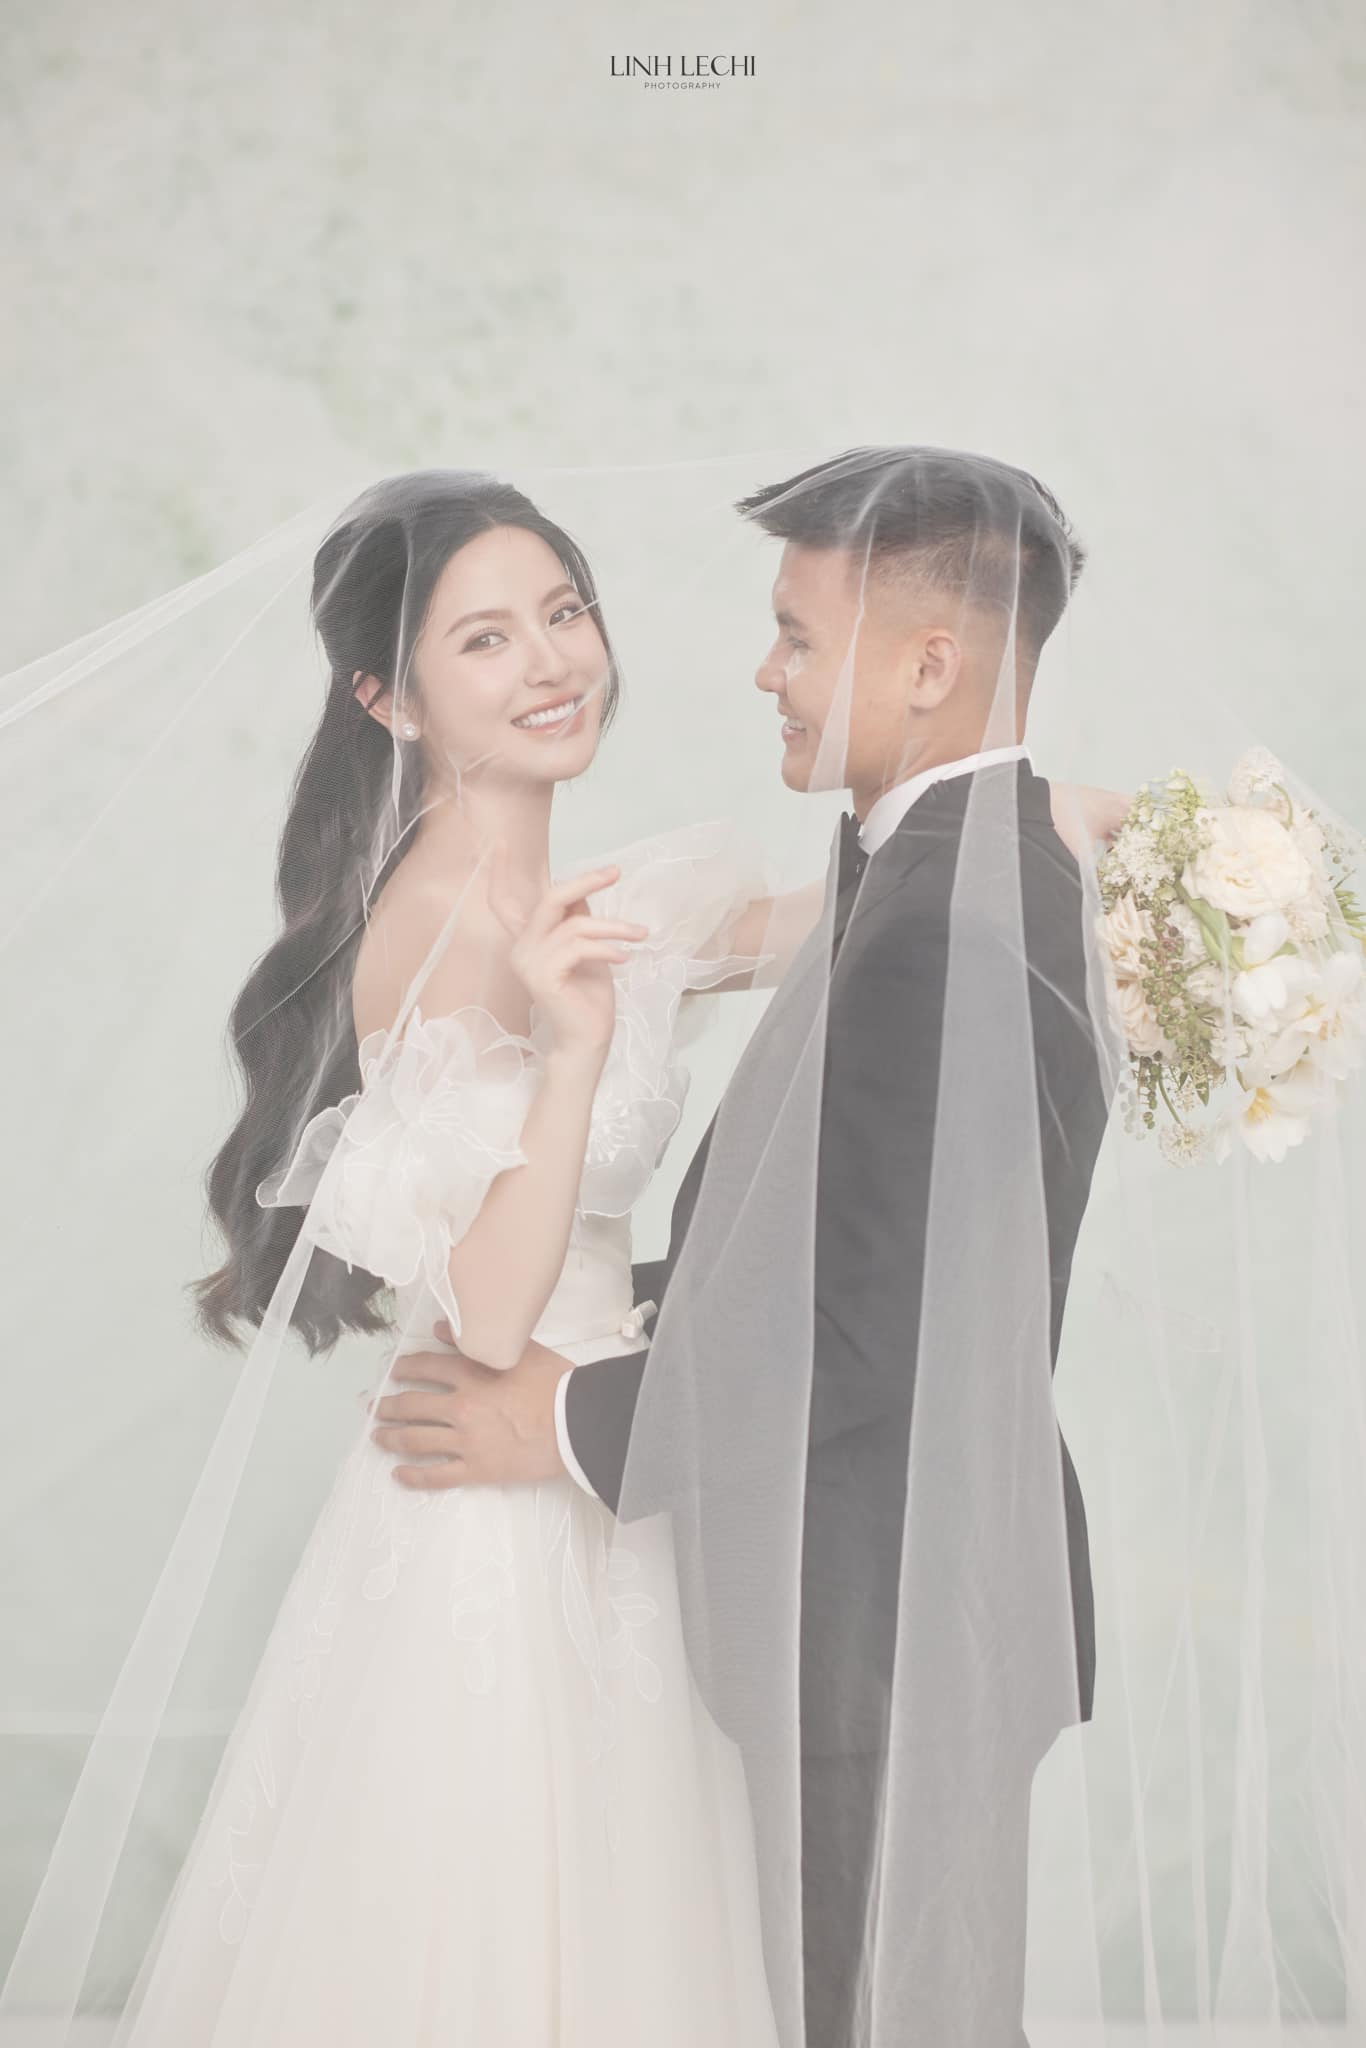 Quang Hải và Chu Thanh Huyền tung ảnh cưới, nhưng chiều cao 'bất ổn' của chú rể gây hoang mang - ảnh 7